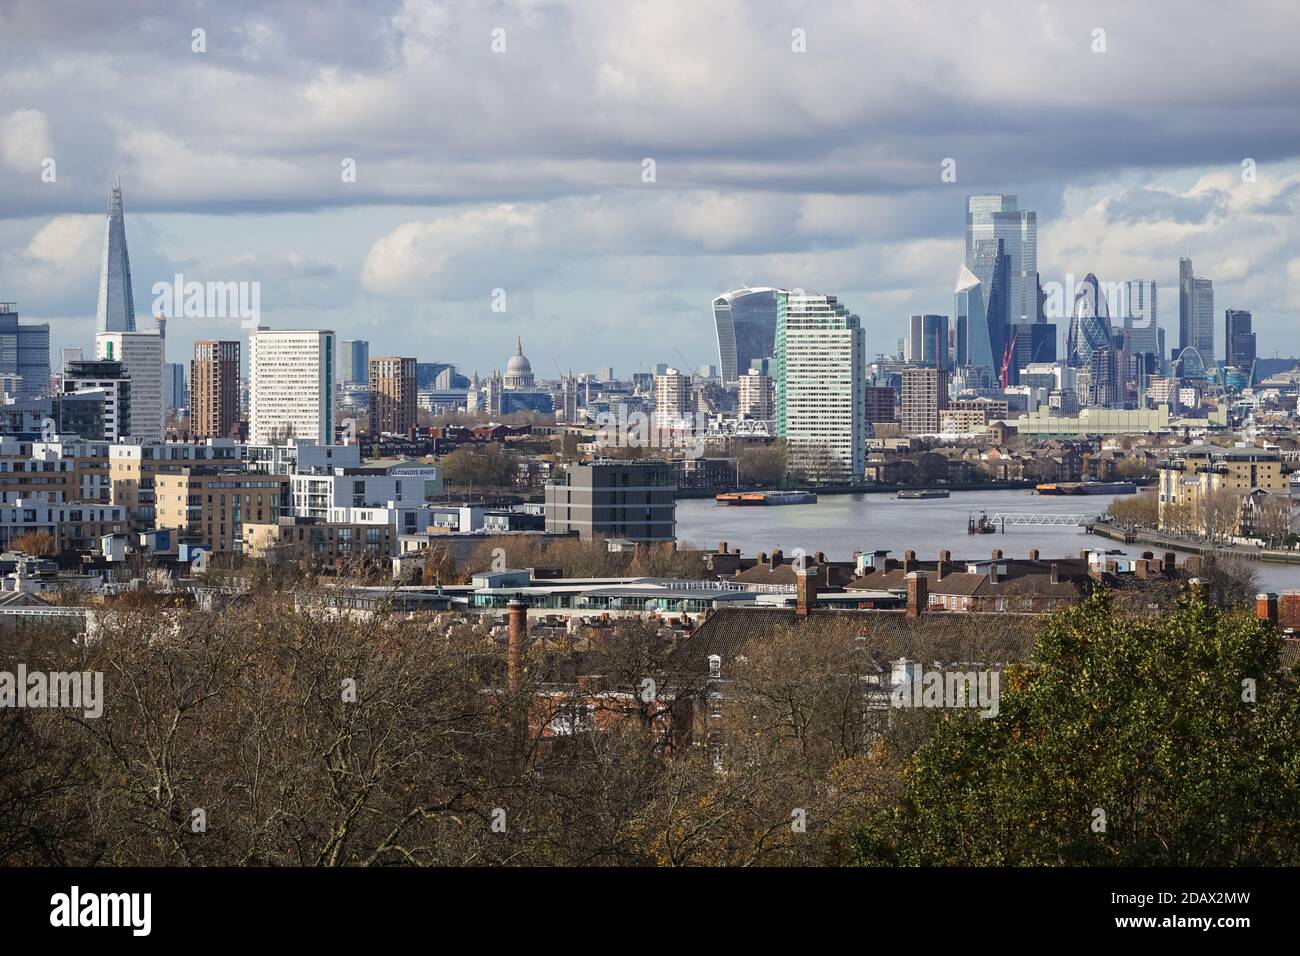 Vue sur Londres avec des immeubles de grande hauteur, Angleterre Royaume-Uni Banque D'Images